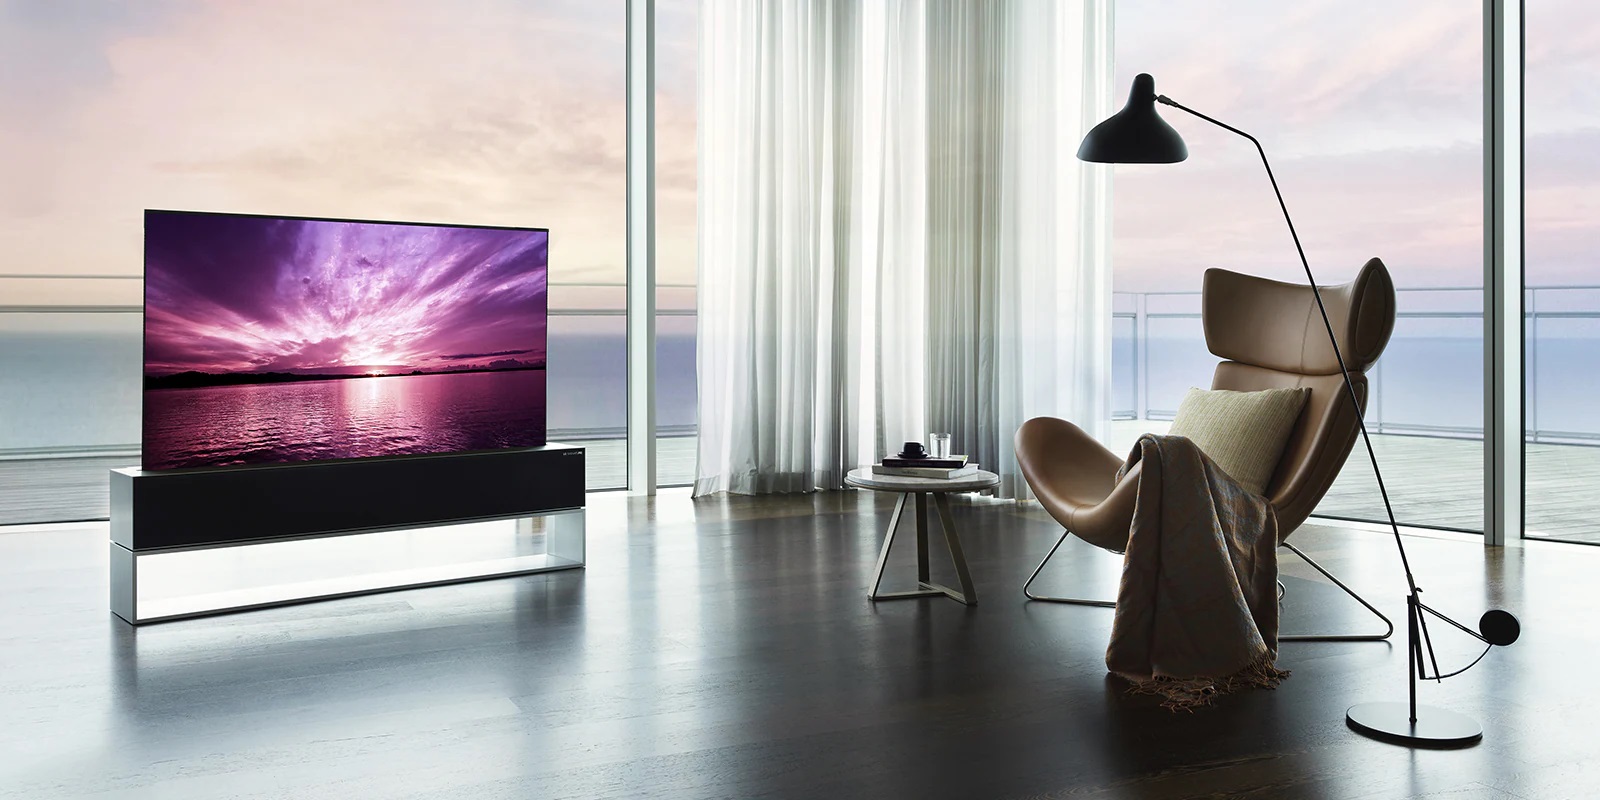 طراحی و مشخصات تلویزیون OLED65R1 با کیفیت تصویرفورکی 65 اینچ